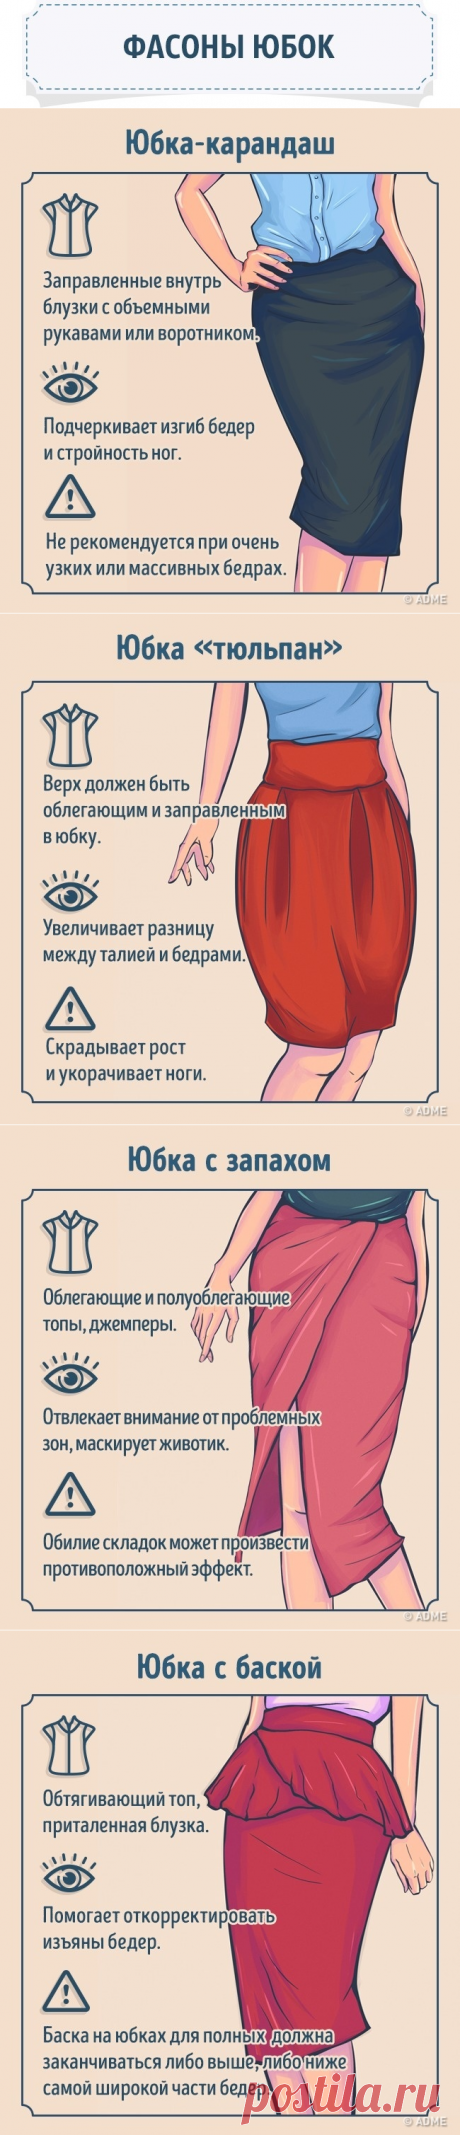 Как выбрать идеальную юбку по типу фигуры